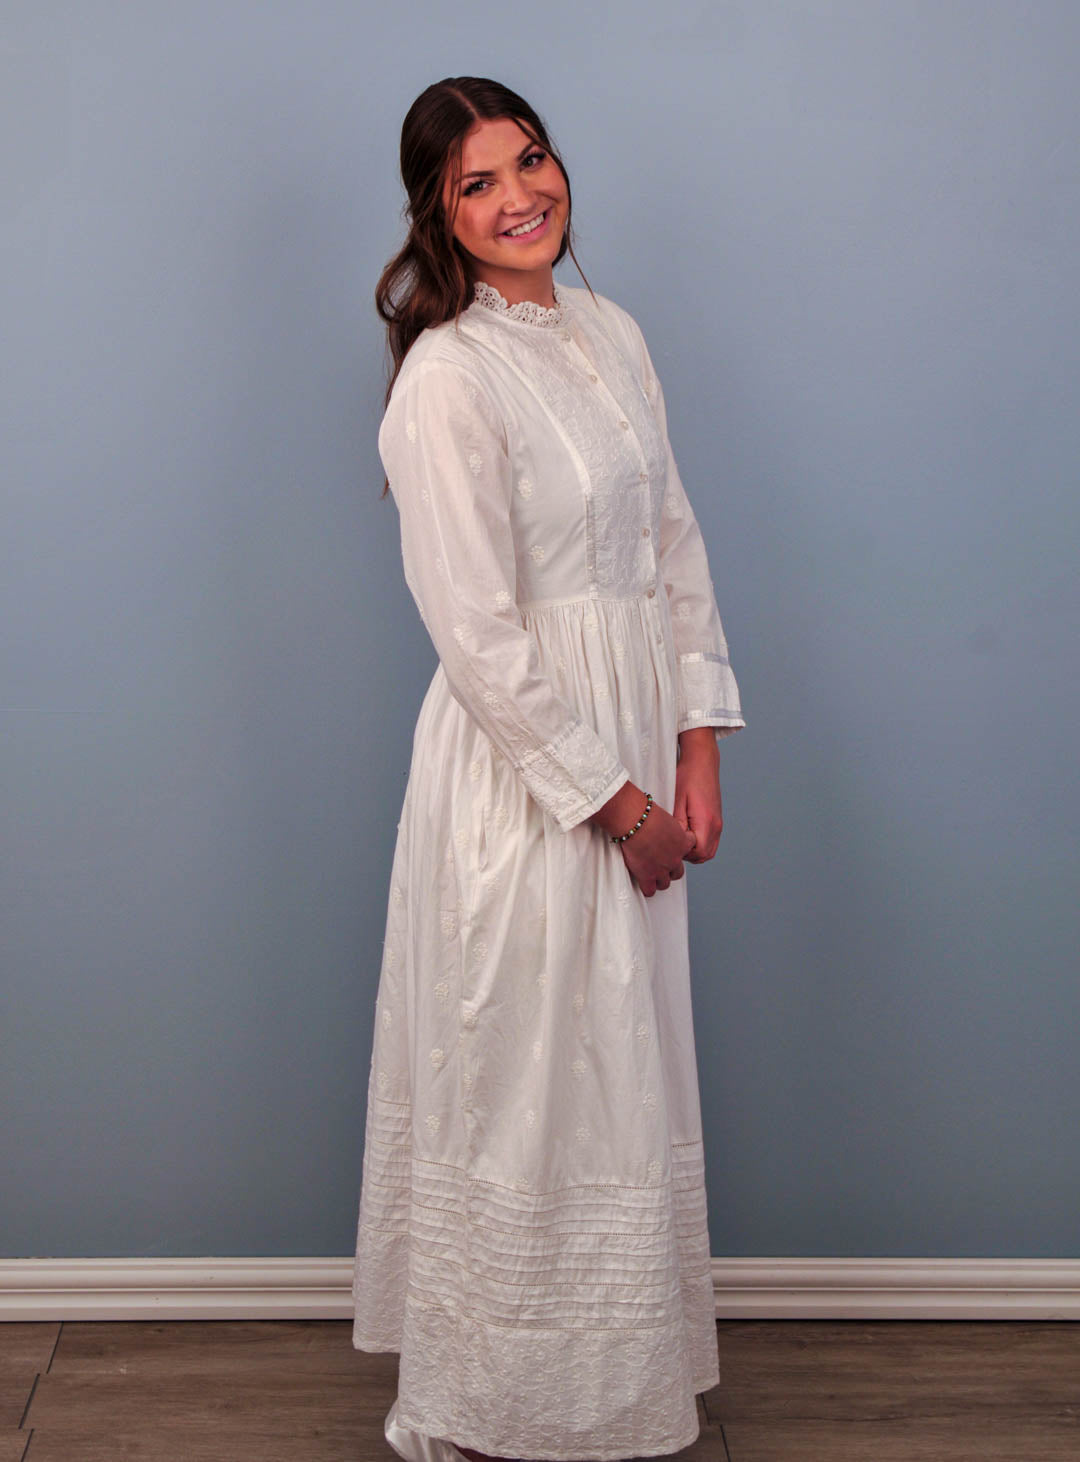 mormon dress